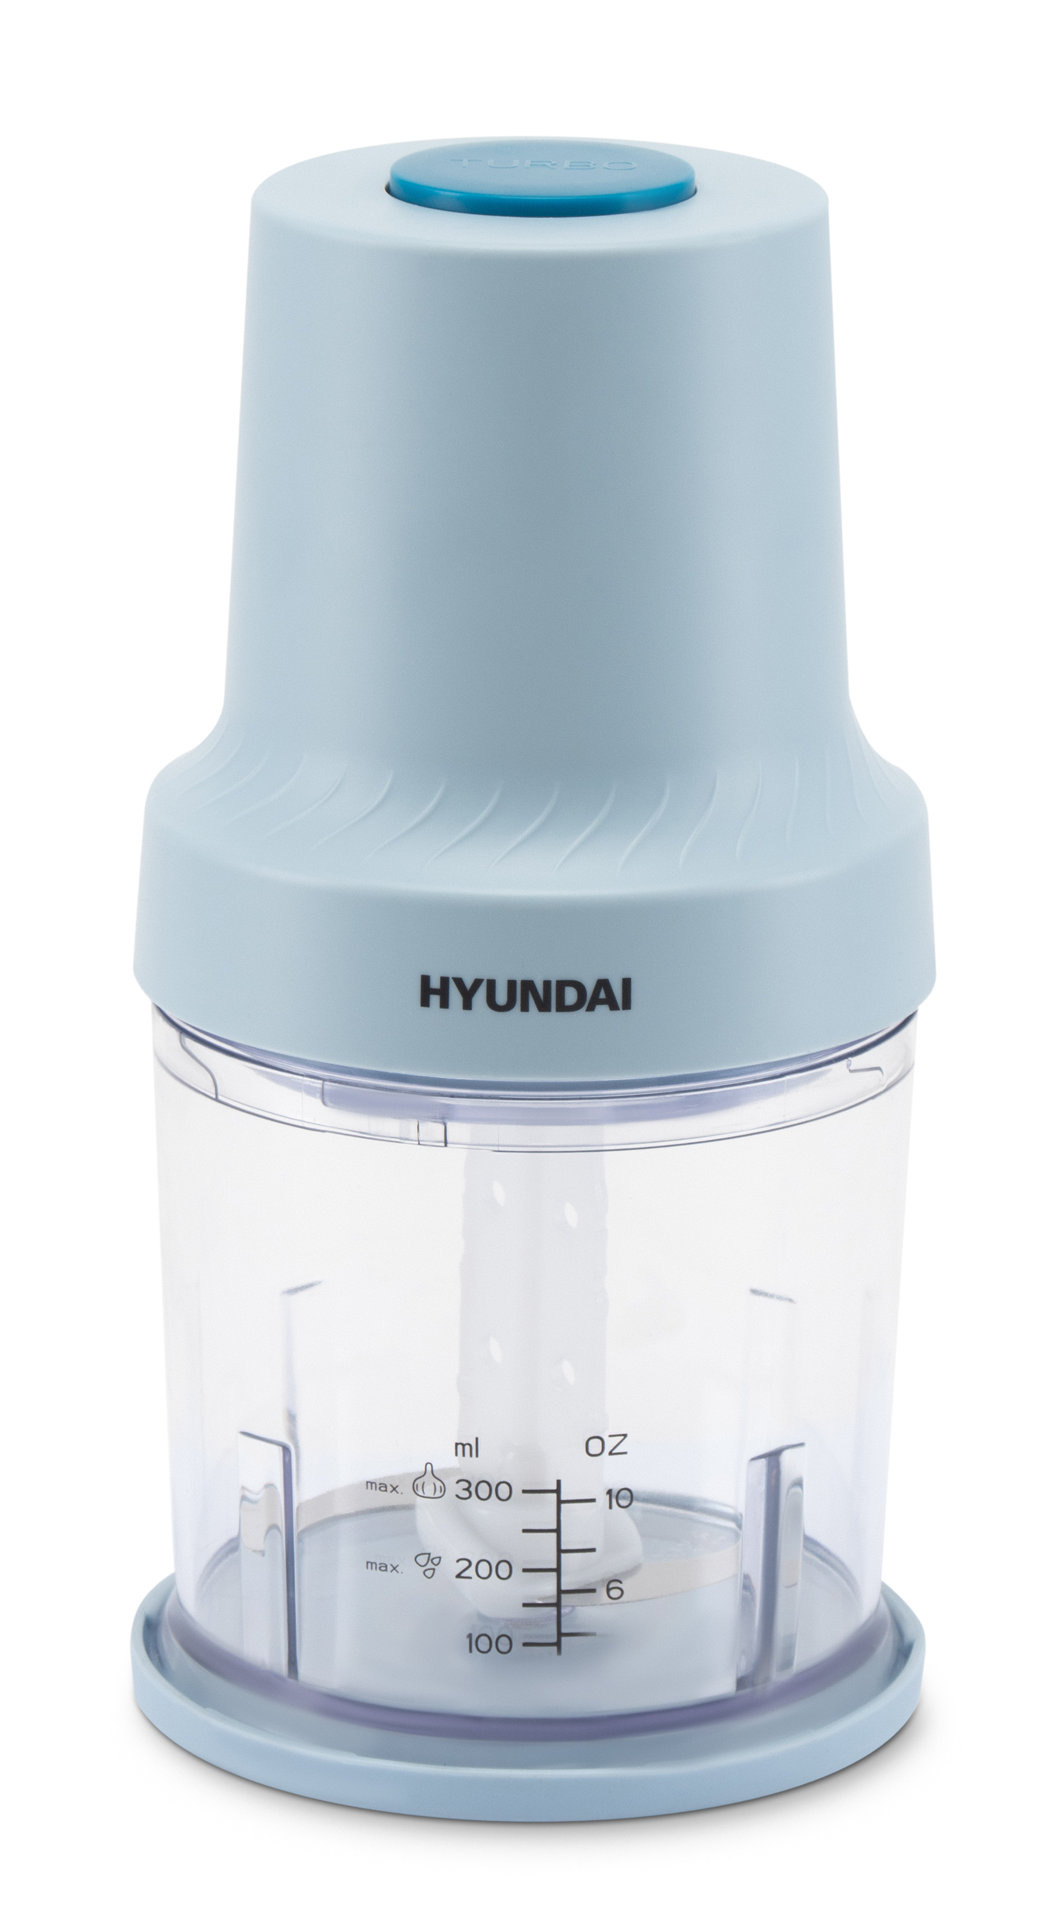 Измельчитель электрический Hyundai HYC-P3138 0.8л. 300Вт голубой/белый